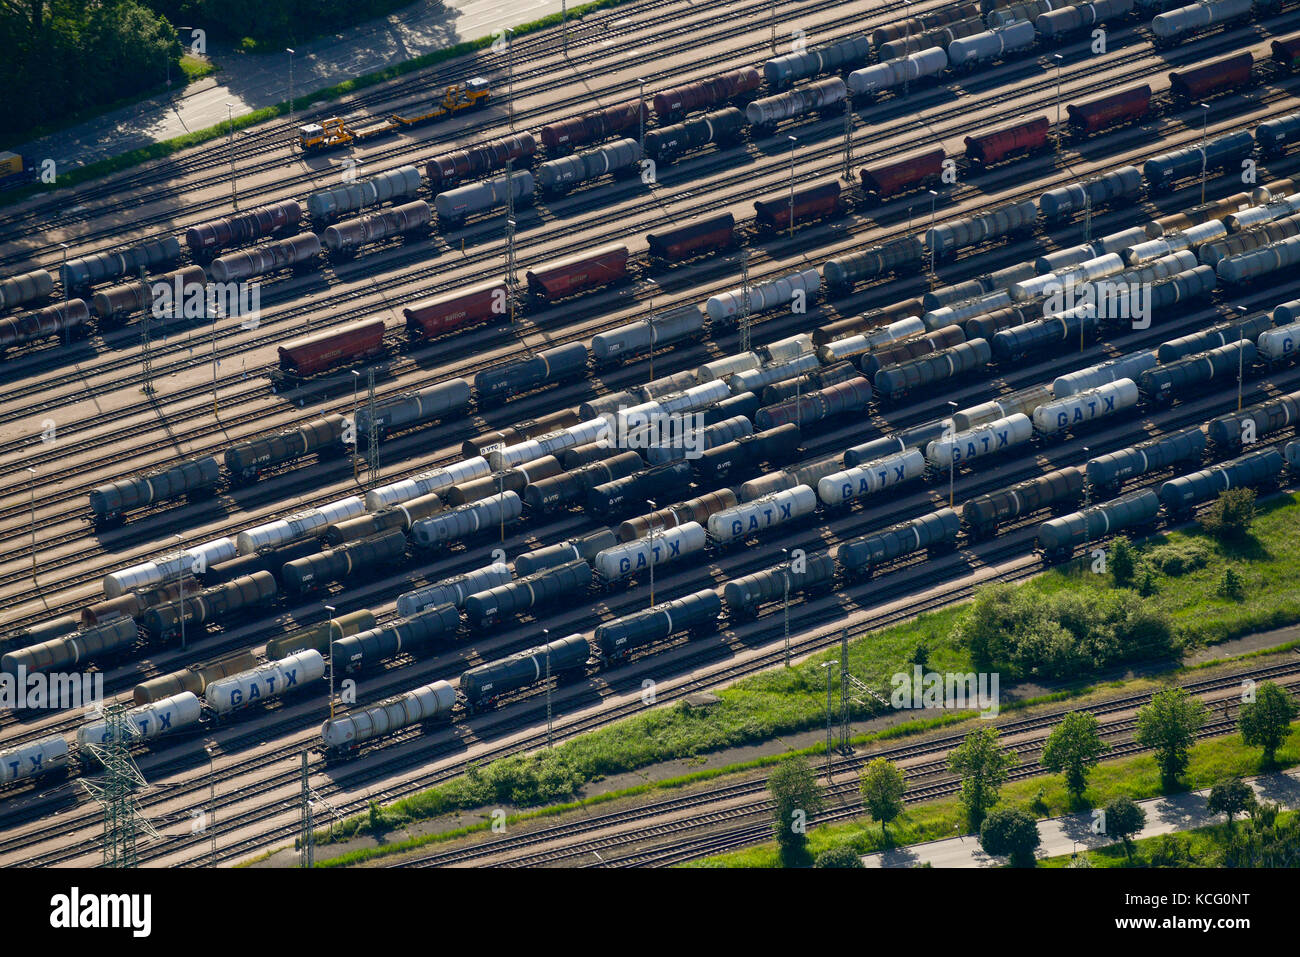 Germania Amburgo, un carro cisterna delle ferrovie sulle vie / Deutschland Hamburg, Tankwagen der Bahn auf Gleisen Foto Stock